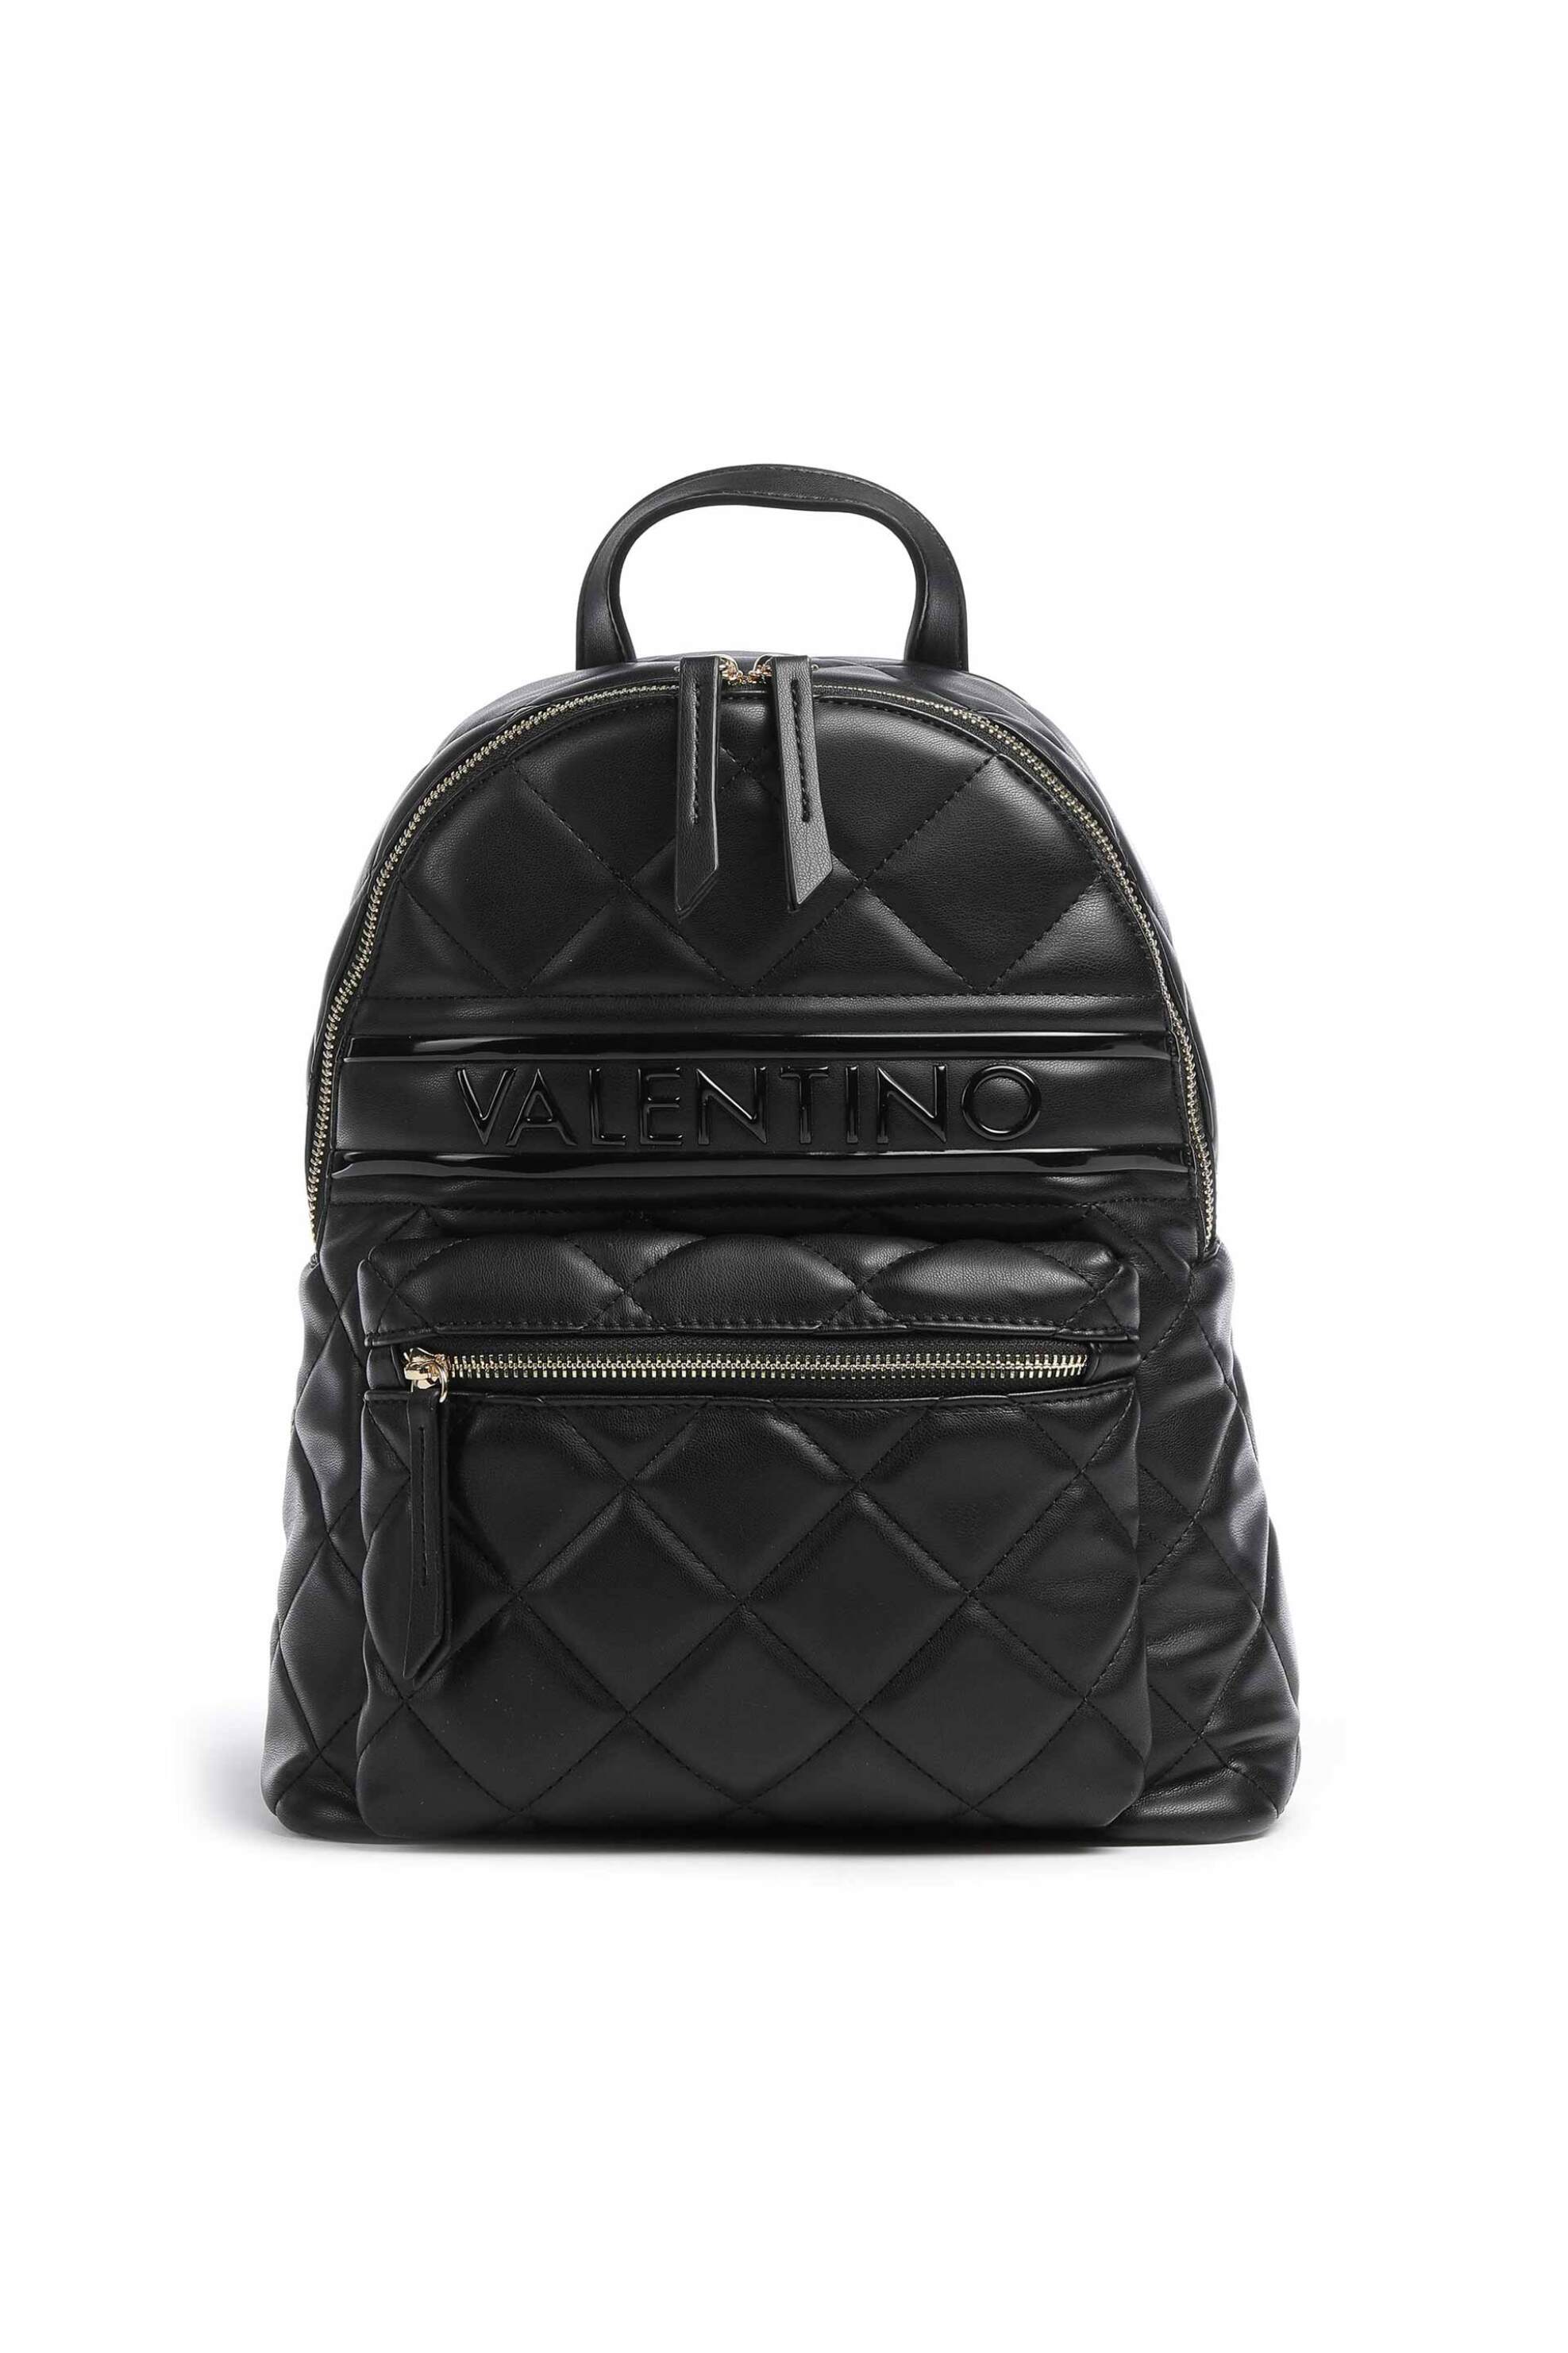 Γυναίκα > ΤΣΑΝΤΕΣ > Σακίδια & Backpacks Valentino γυναικείο backpack μονόχρωμο με all-over καπιτονέ σχέδιο "Ada" - 55KVBS51O07/ADA Μαύρο